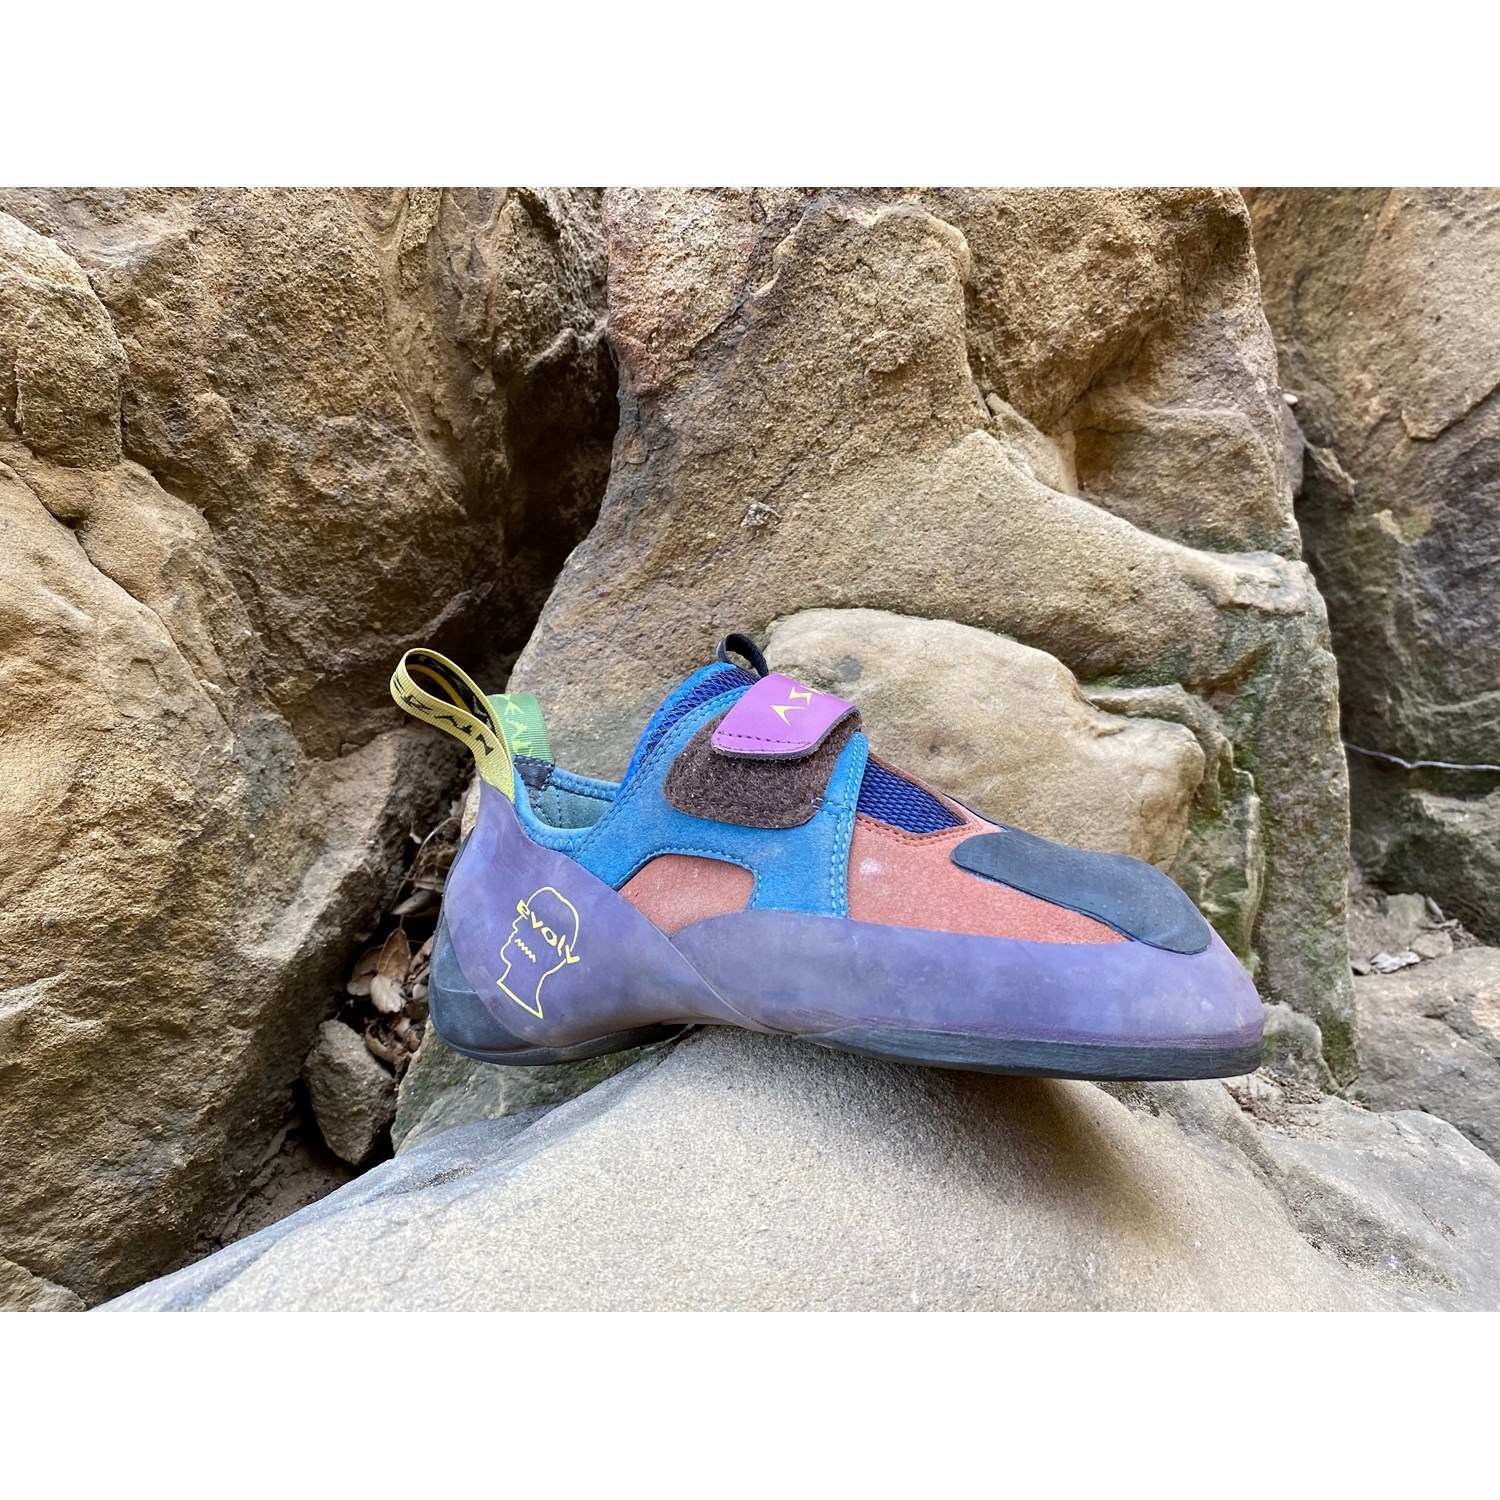 size 15 rock climbing shoes